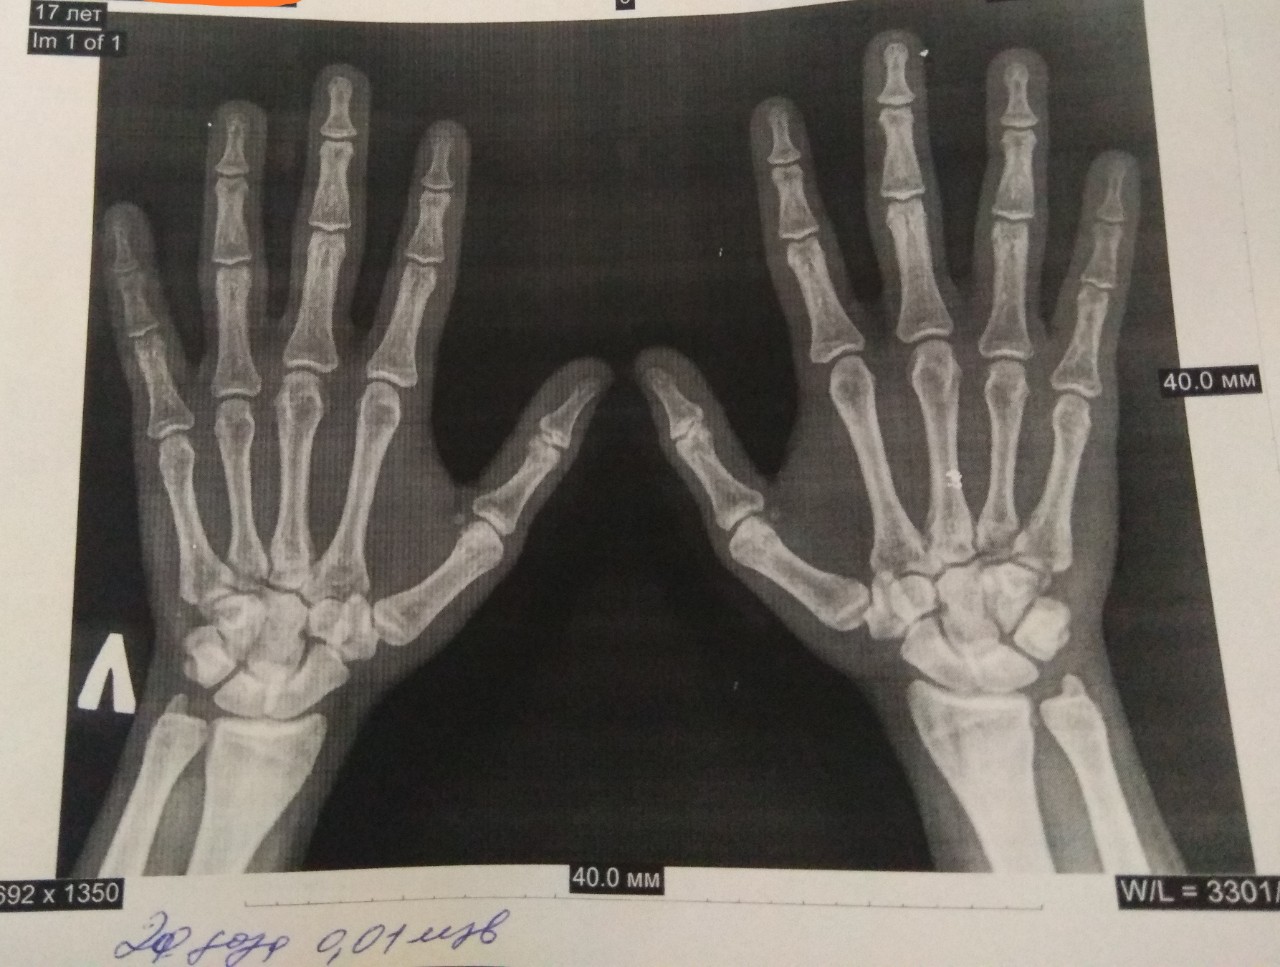 Рентген кисти руки фото здоровой правой